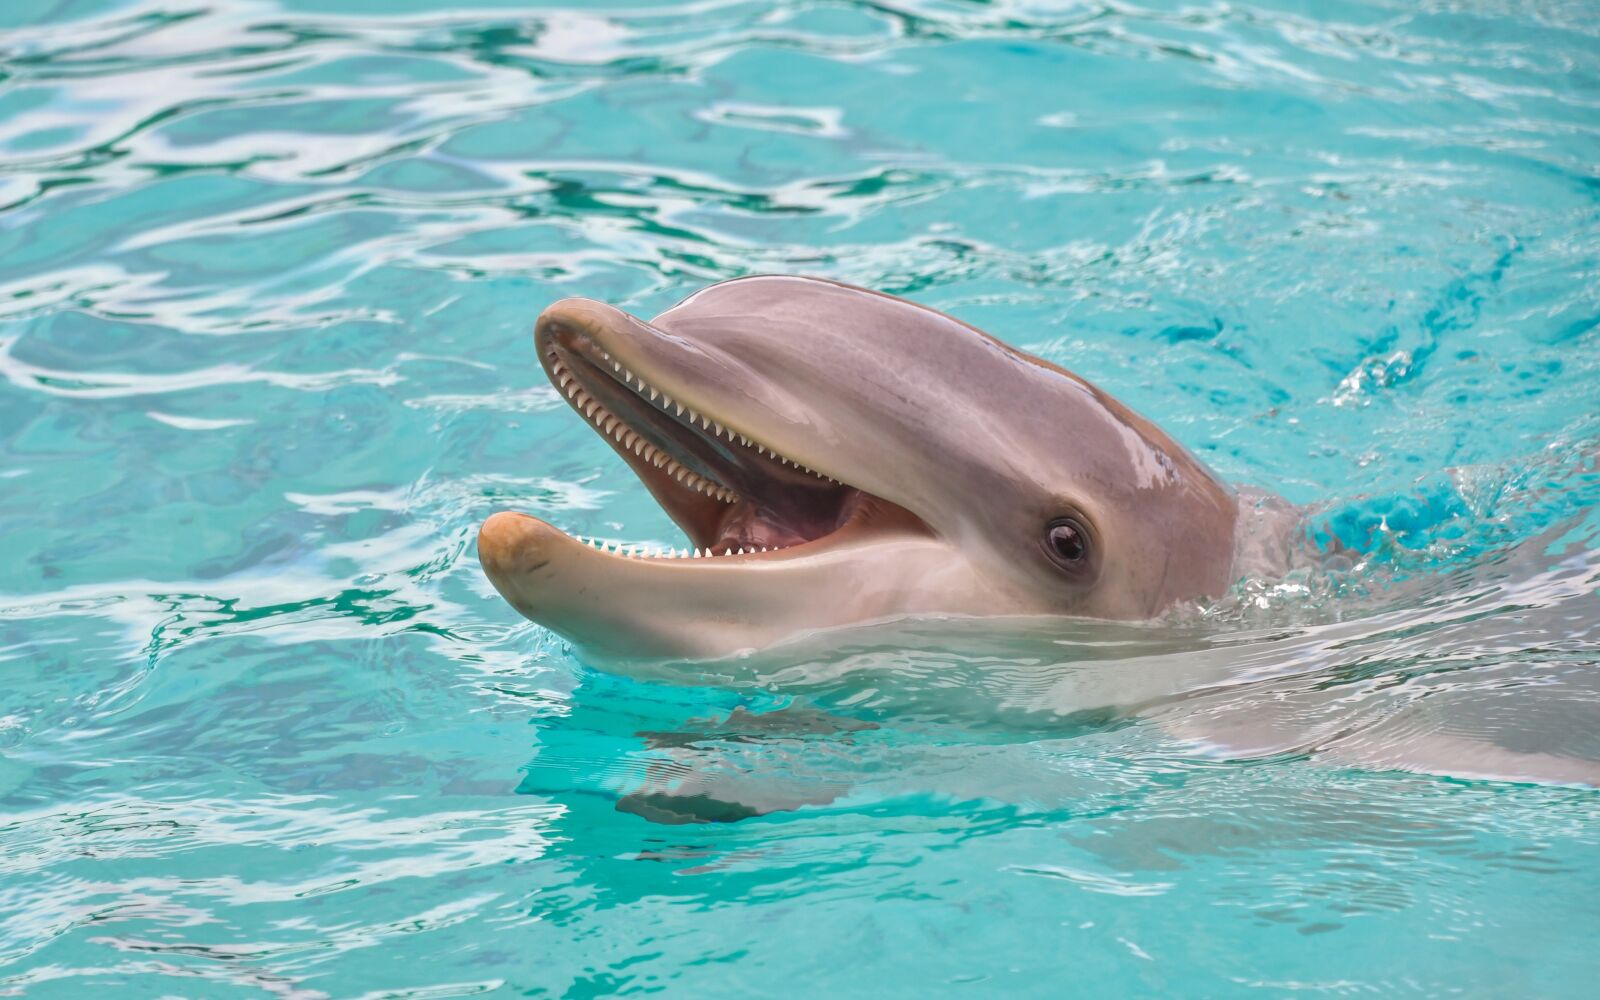 Nikon D500 sample photo. Dolphin, look, happy photography